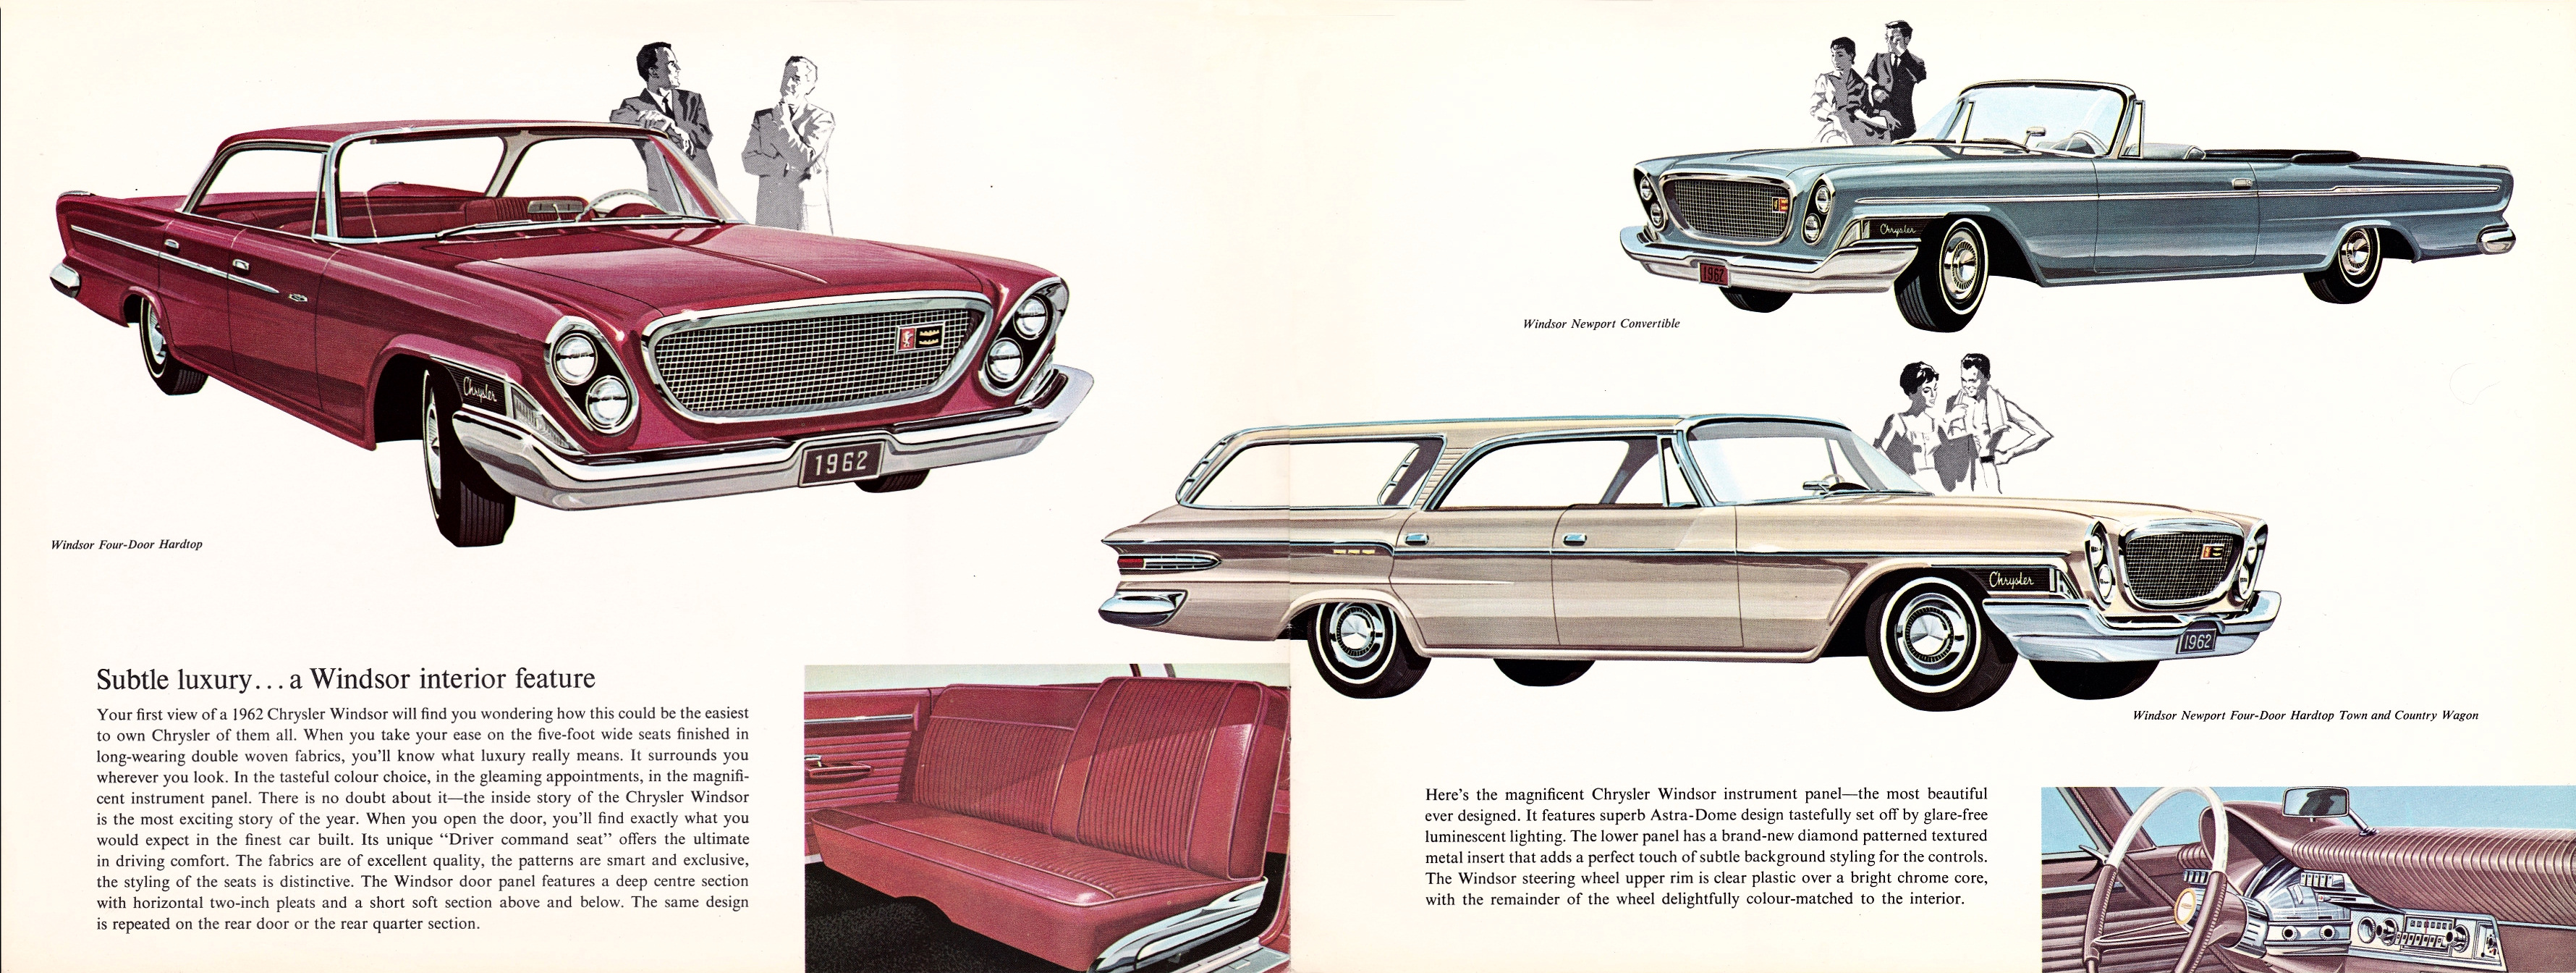 1962_Chrysler_Full_Line_Cdn-04-05